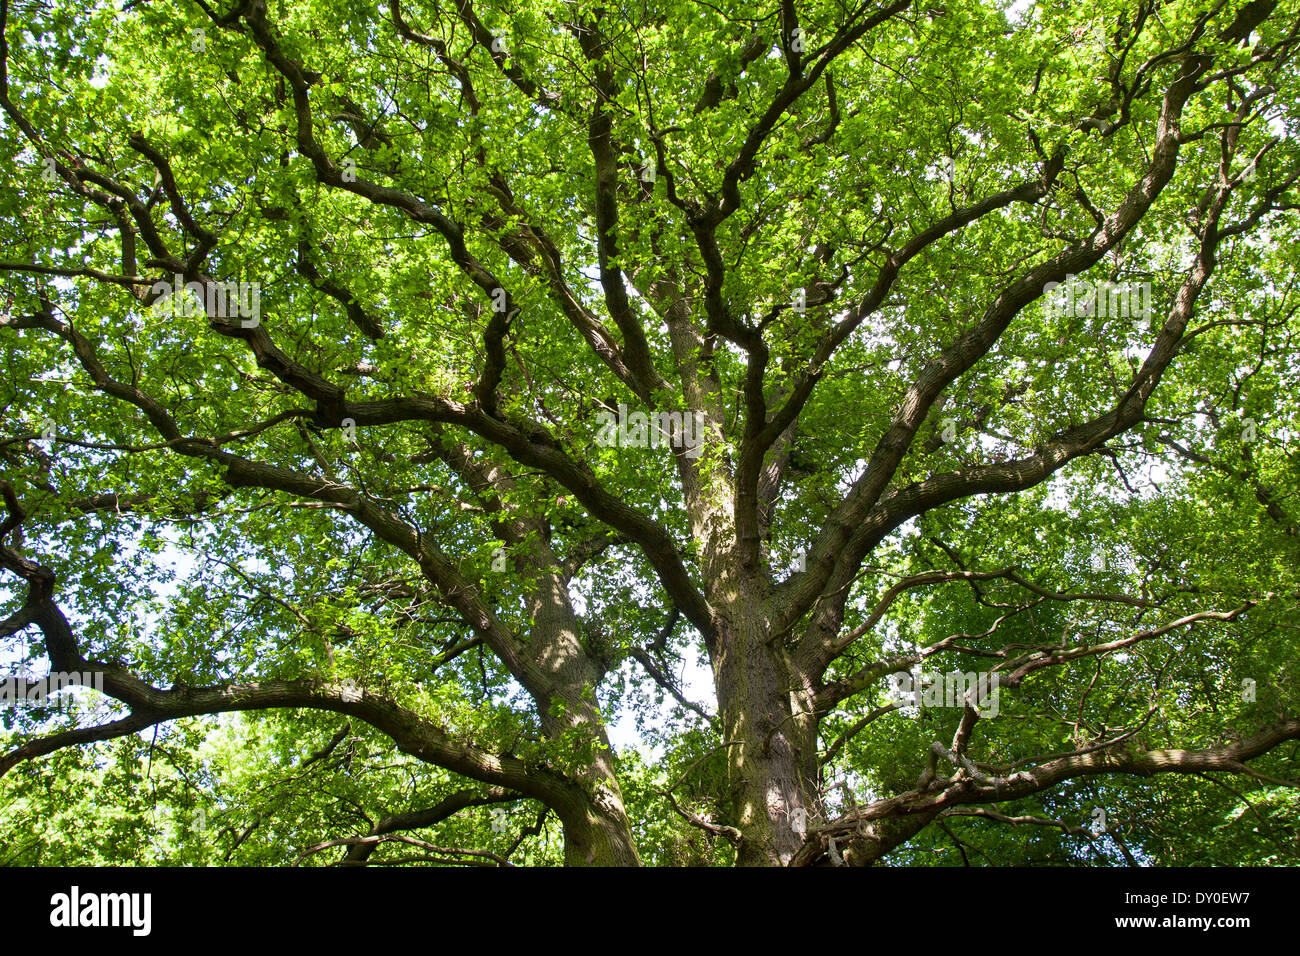 English Oak, oaks, treetop, crown, Stiel-Eiche, Stieleiche, Eiche, Eichen, Quercus robur, Frühjahr, Baumkrone, Chêne commun Stock Photo